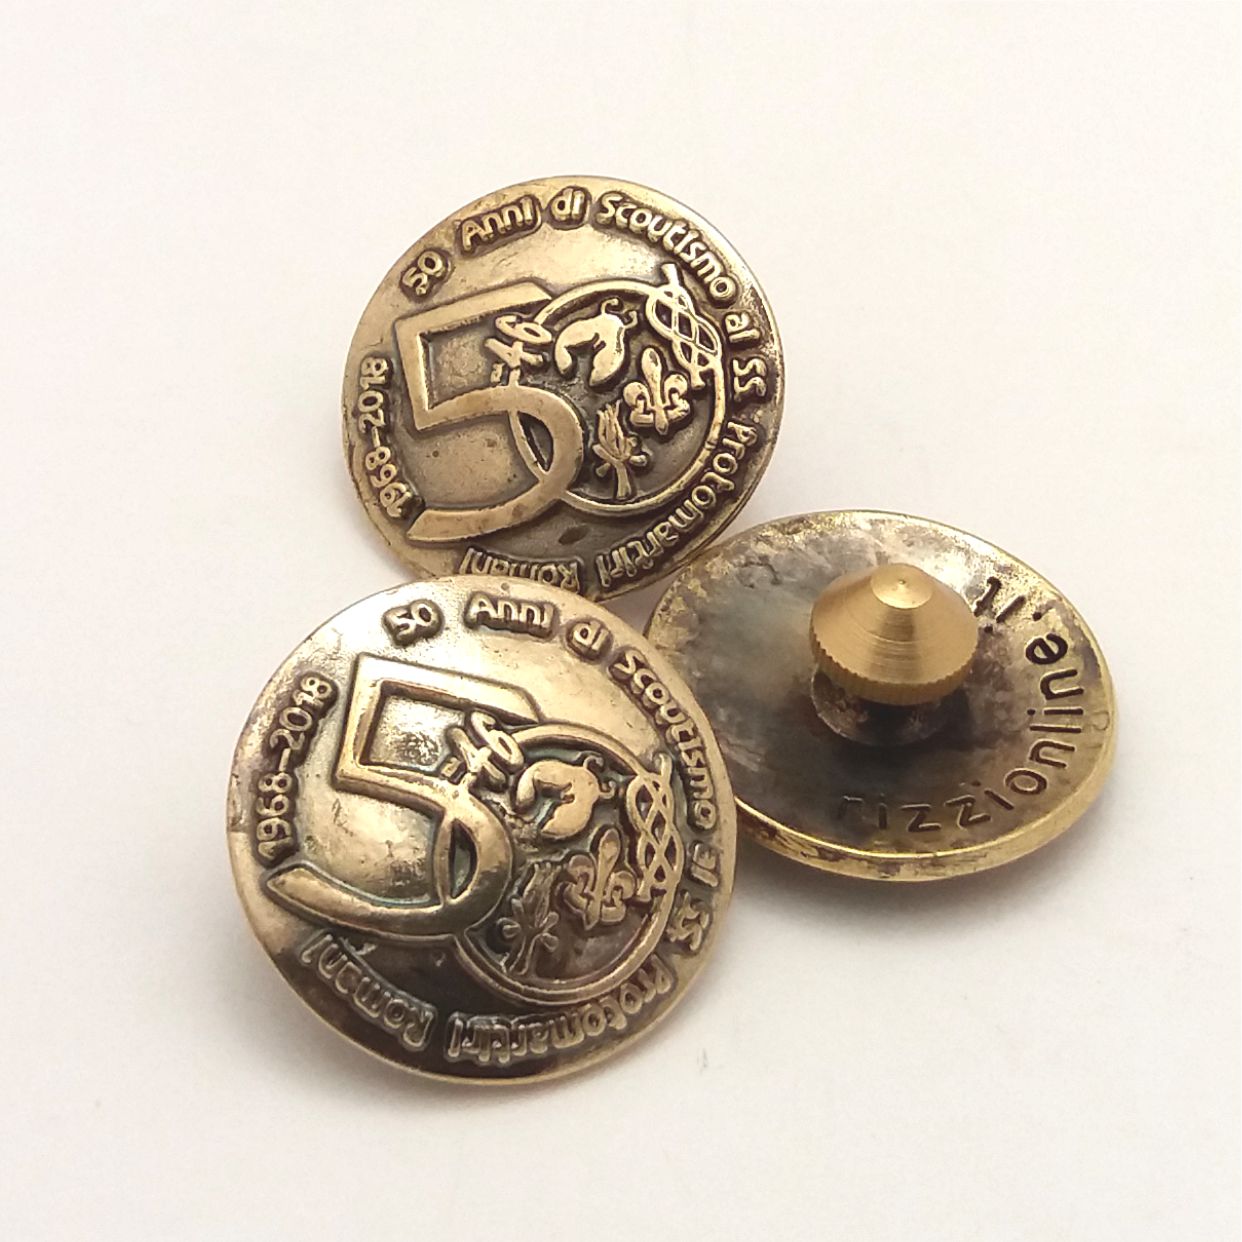 Distintivi per cintura in metallo ottonato ed anticato